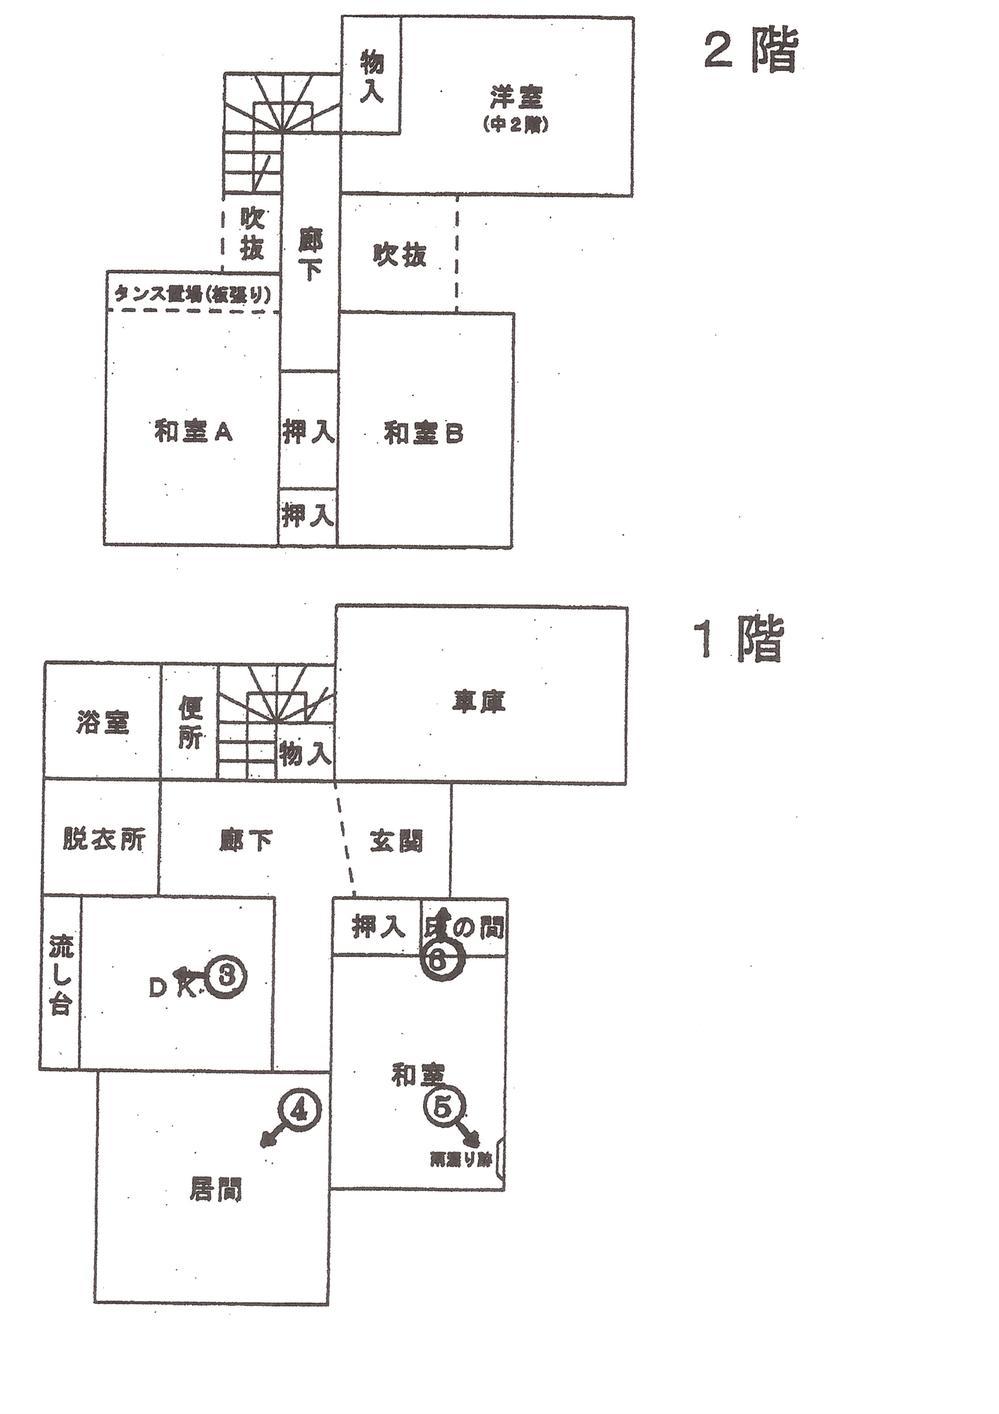 Floor plan. 15.8 million yen, 7LDK, Land area 168.35 sq m , Building area 144.96 sq m